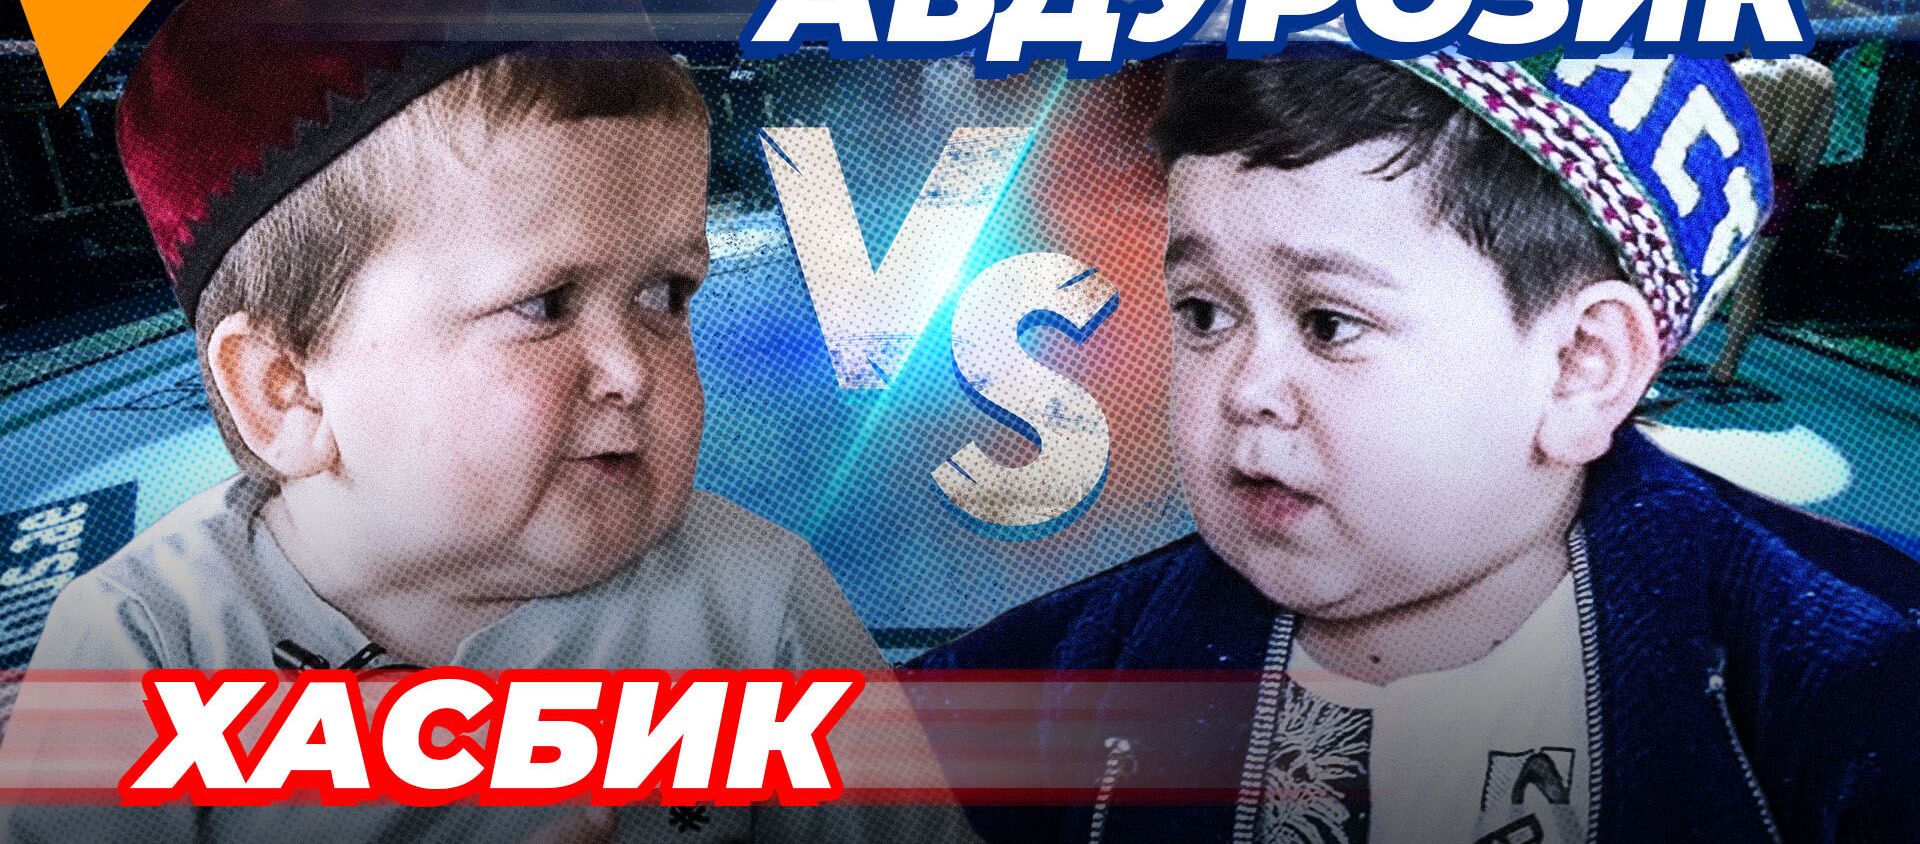 Хасбик vs Абдурозик — когда и где пройдет главный бой года поп-ММА. Видео - Sputnik Кыргызстан, 1920, 19.05.2021